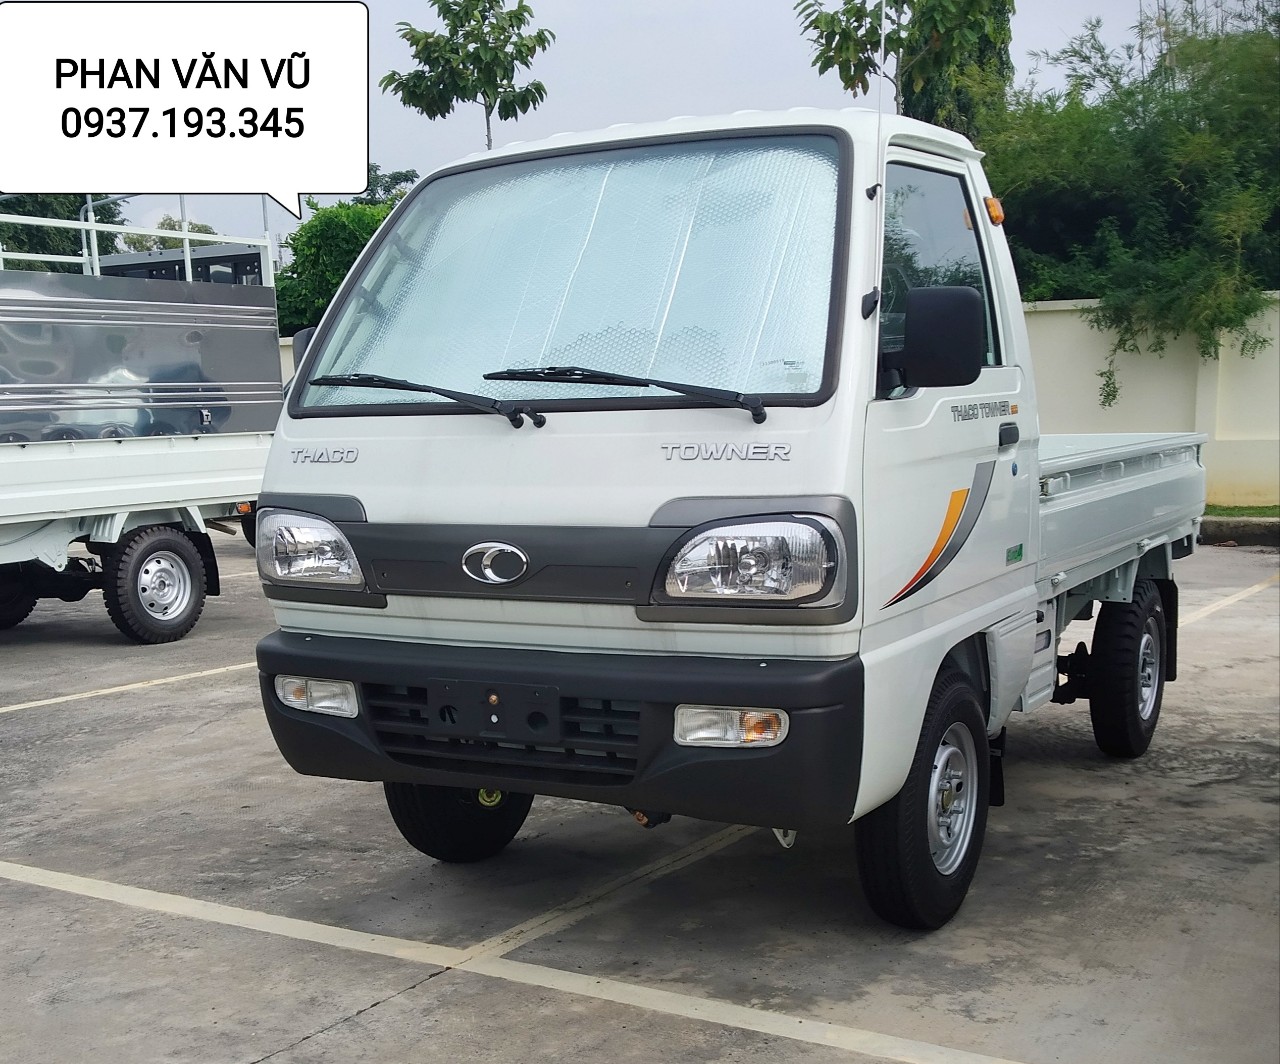 Bán xe tải công nghệ Suzuki 500kg, 750kg, 800kg, dưới 1 tấn giá rẻ tại Bà Rịa Vũng Tàu-6